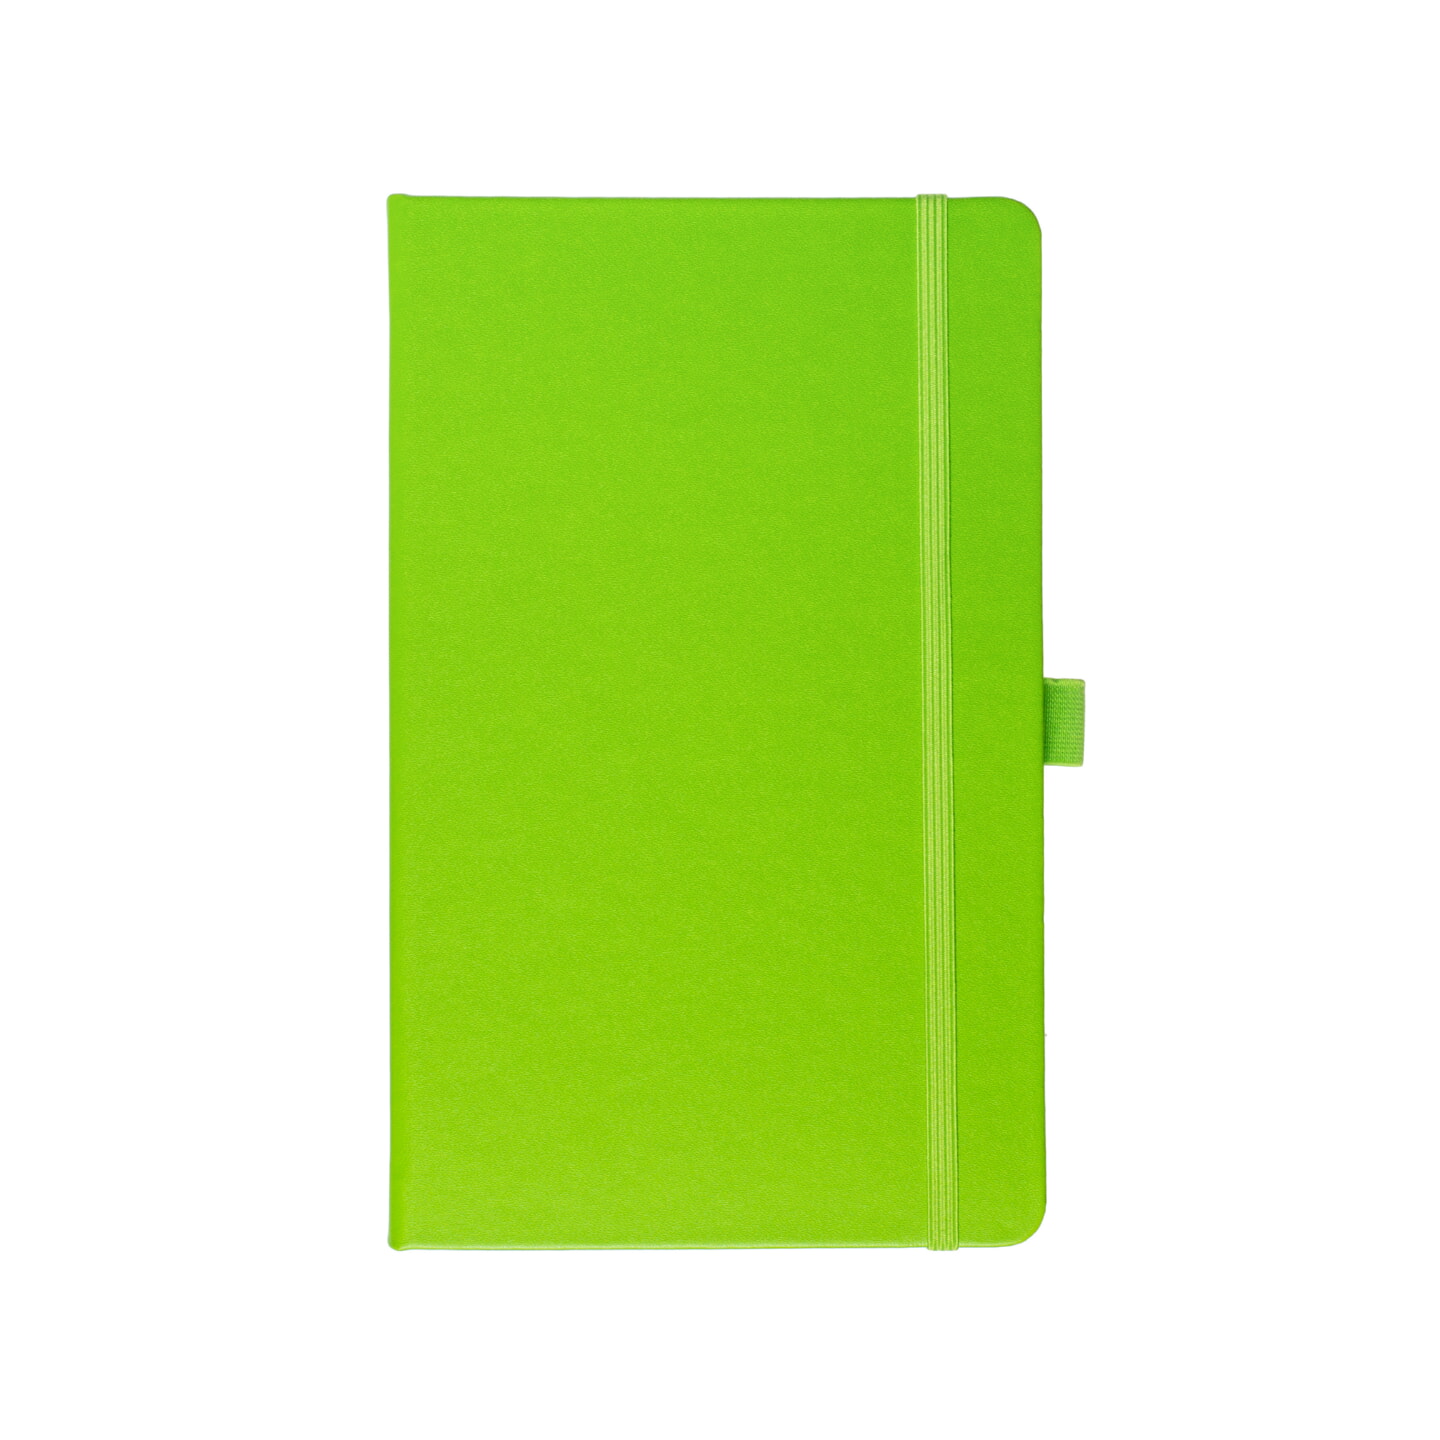 Блокнот для зарисовок Sketchmarker 140г/кв.м 80л твердая обложка Зеленый луг 5 размеров в ассортименте